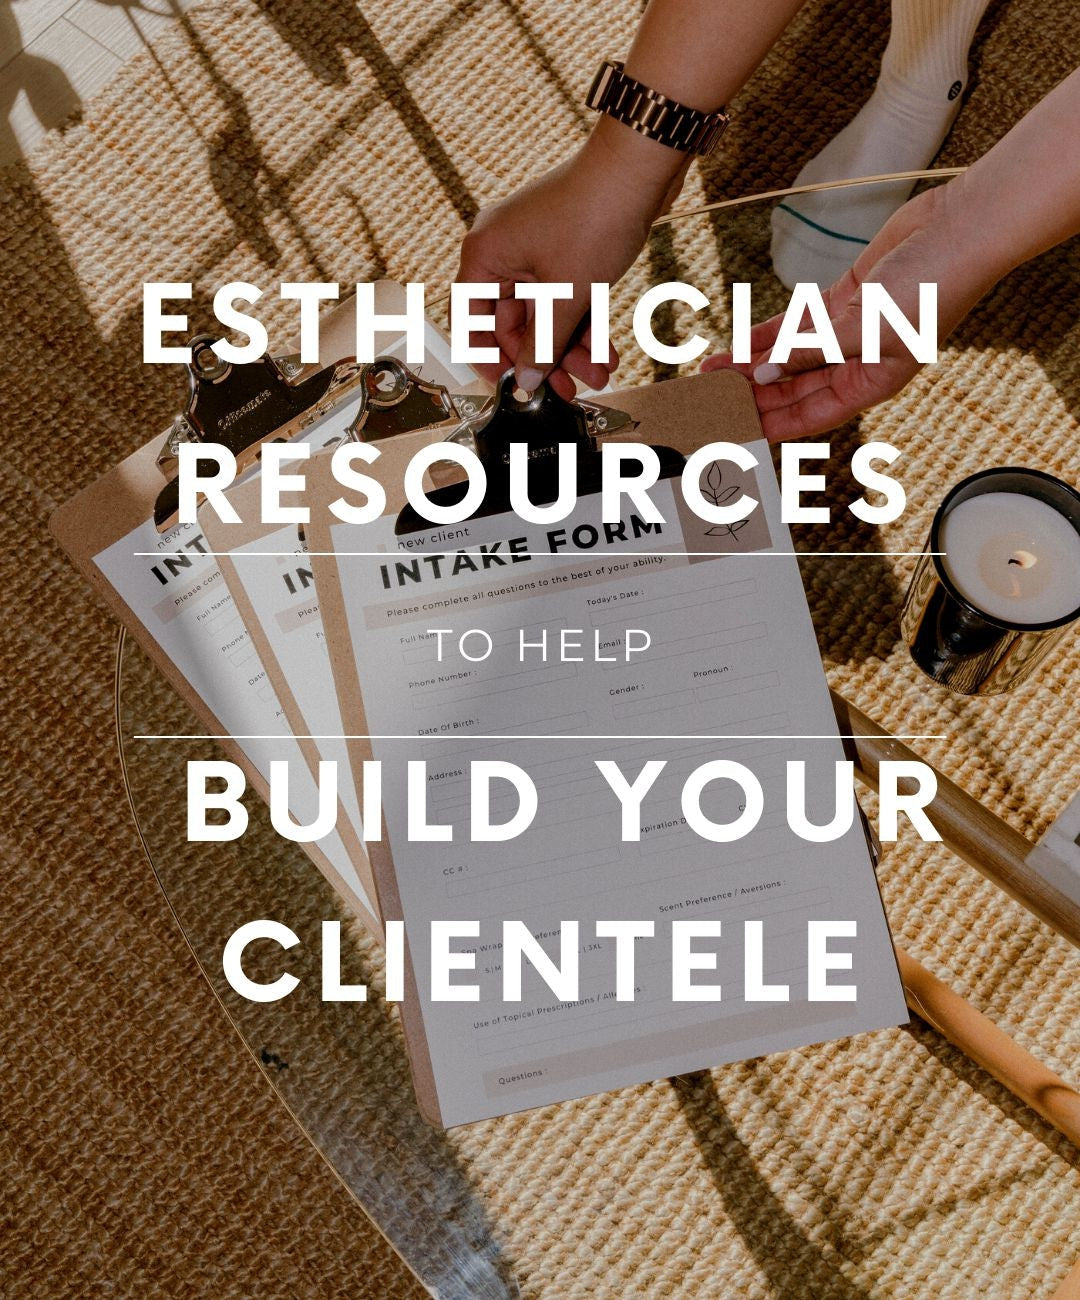 Esthetician Resources to Help Build Your Clientele